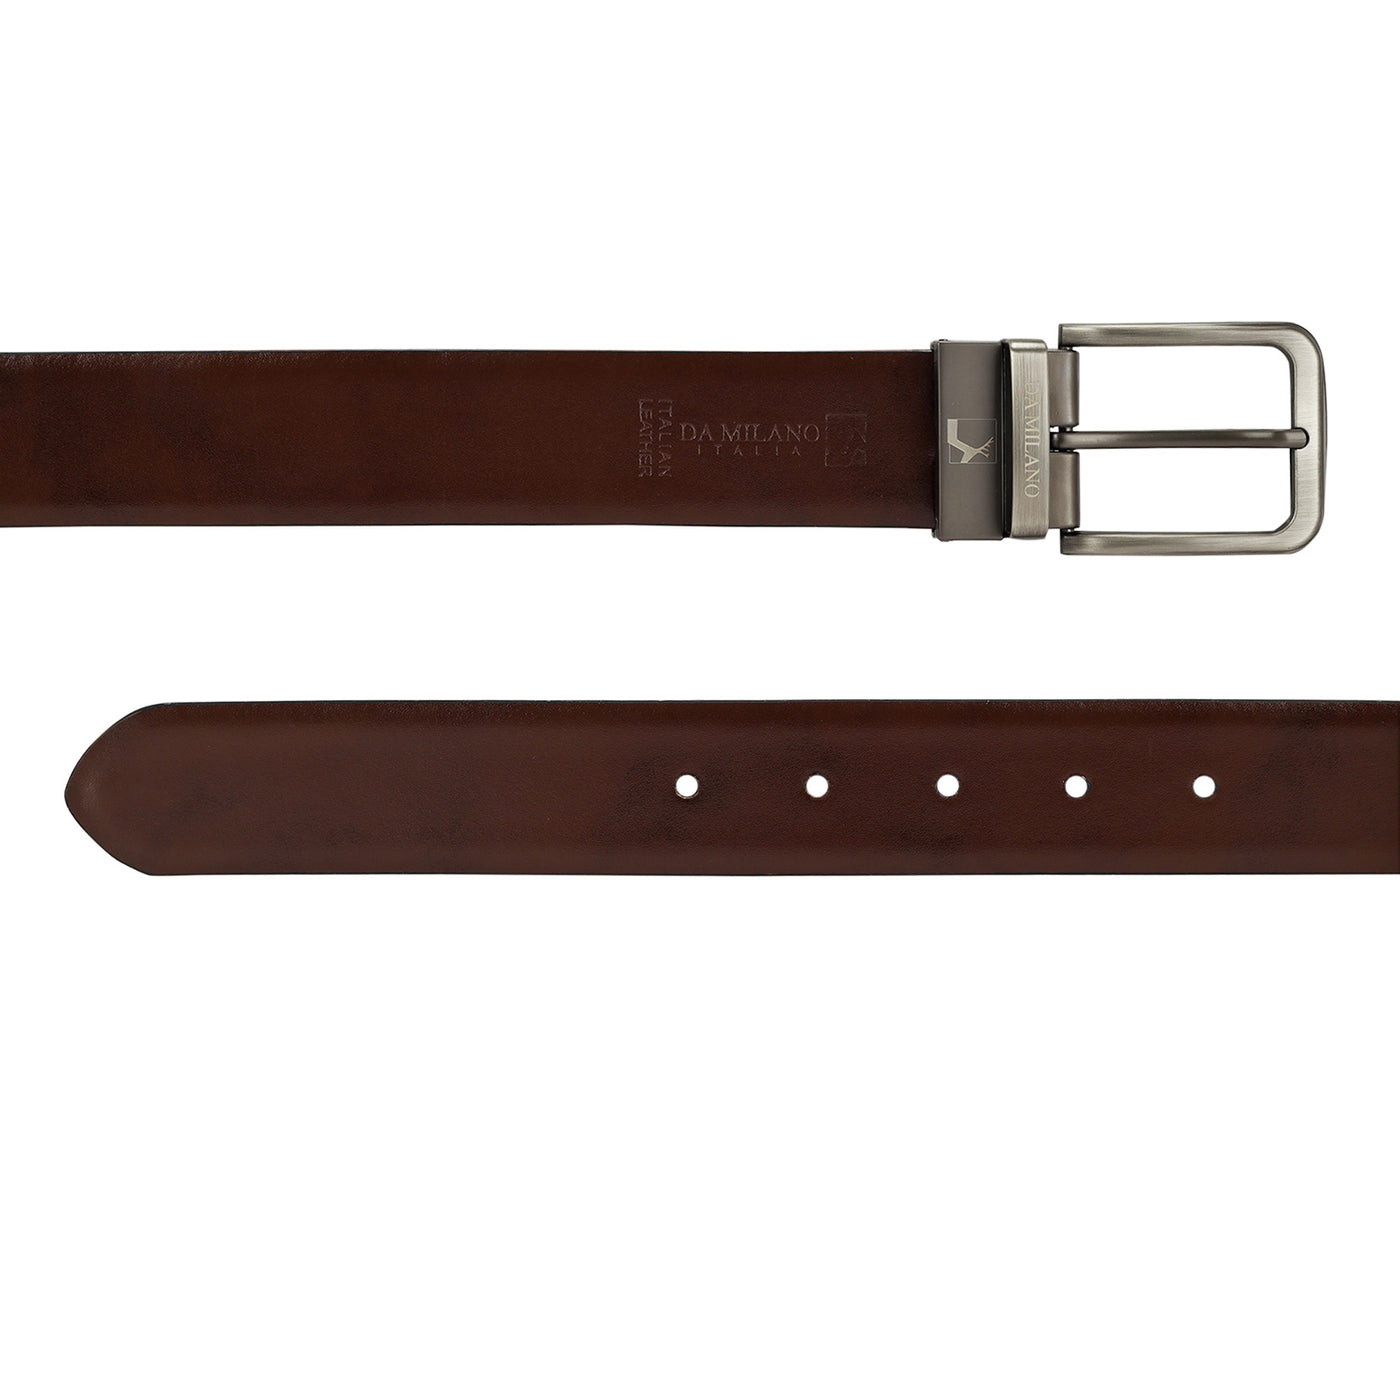 Black Plain Leather Mens Wallet & Belt Gift Set